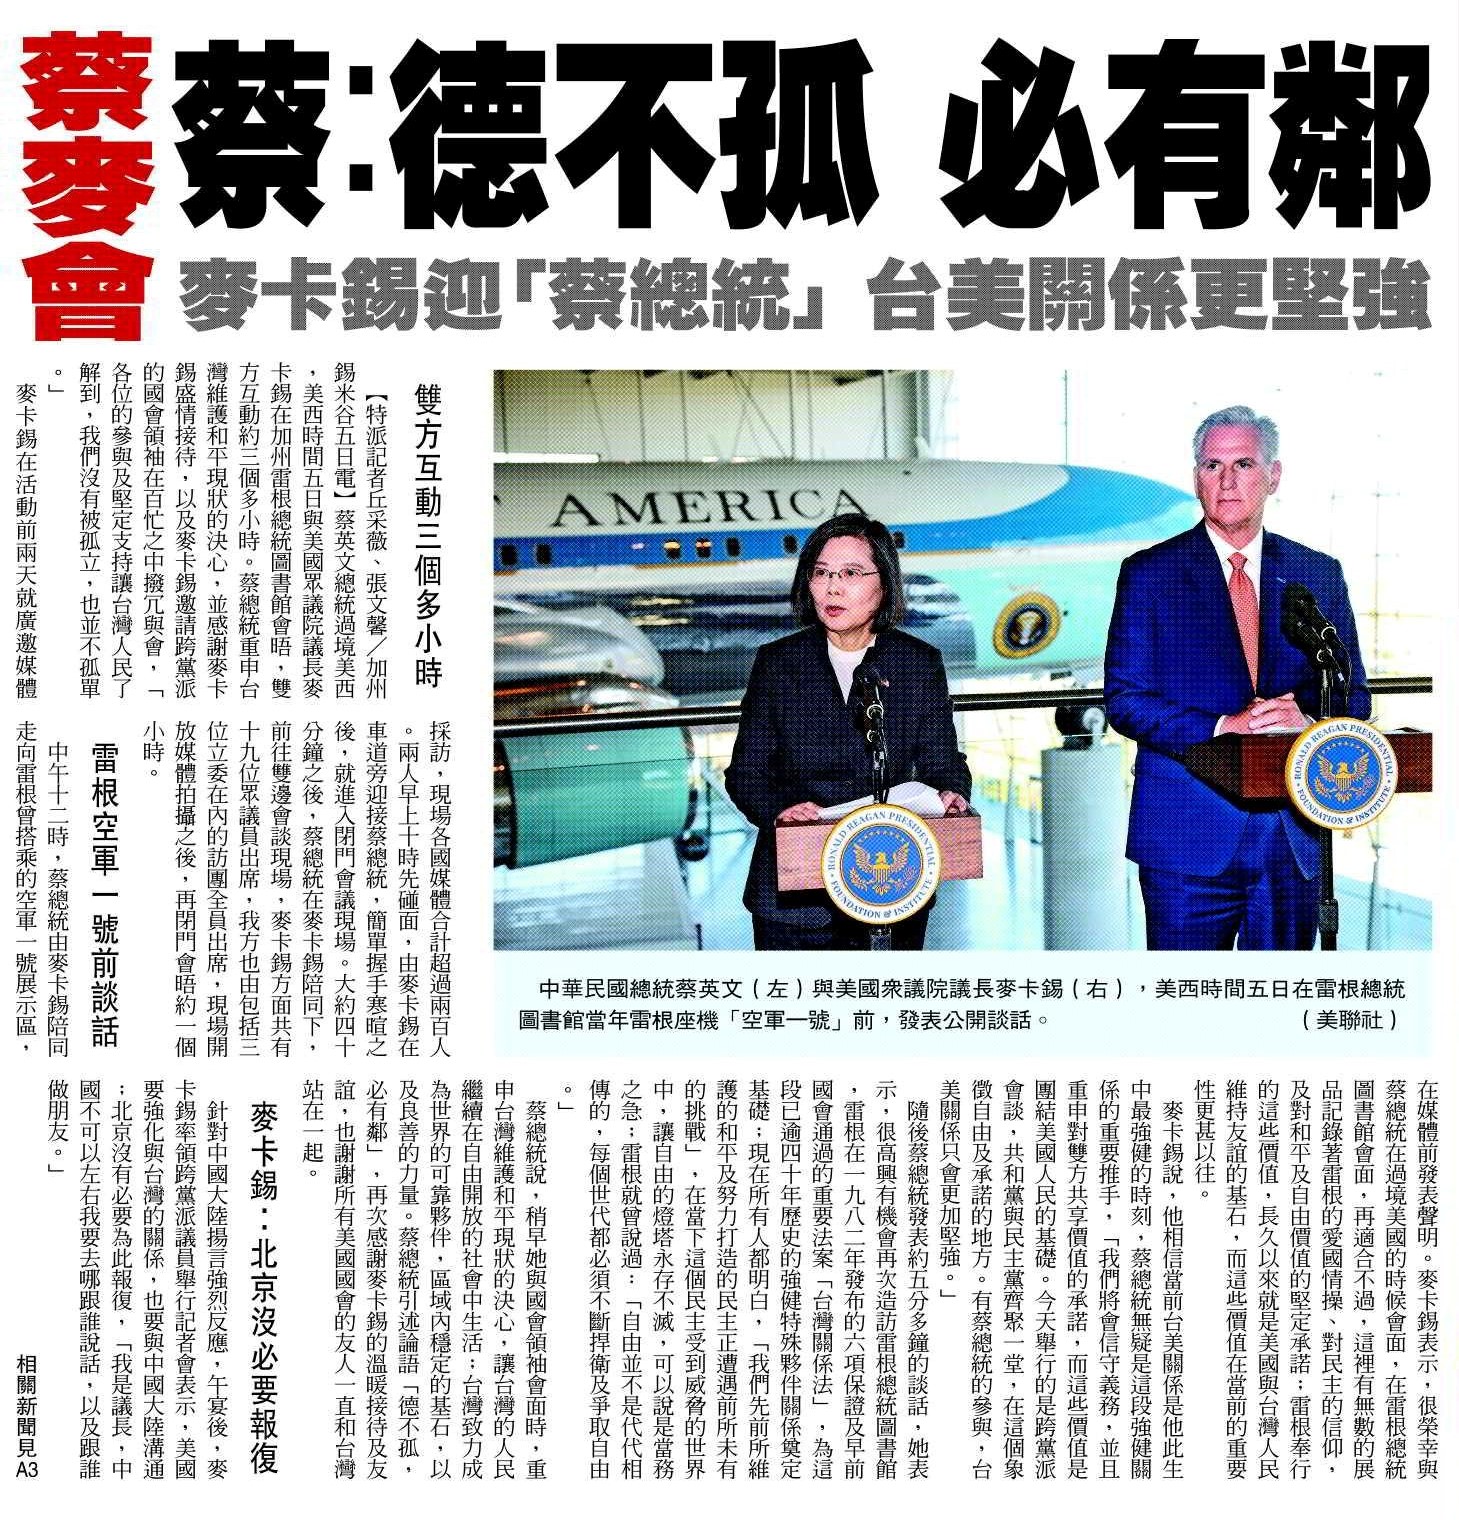 Reunión Tsai-McCarthy Presidenta Tsai: Los virtuosos nunca estarán sólos McCarthy da la bienvenida a la “Presidenta Tsai”, y afirma un mayor fortalecimiento de las relaciones entre Taiwán y Estados Unidos